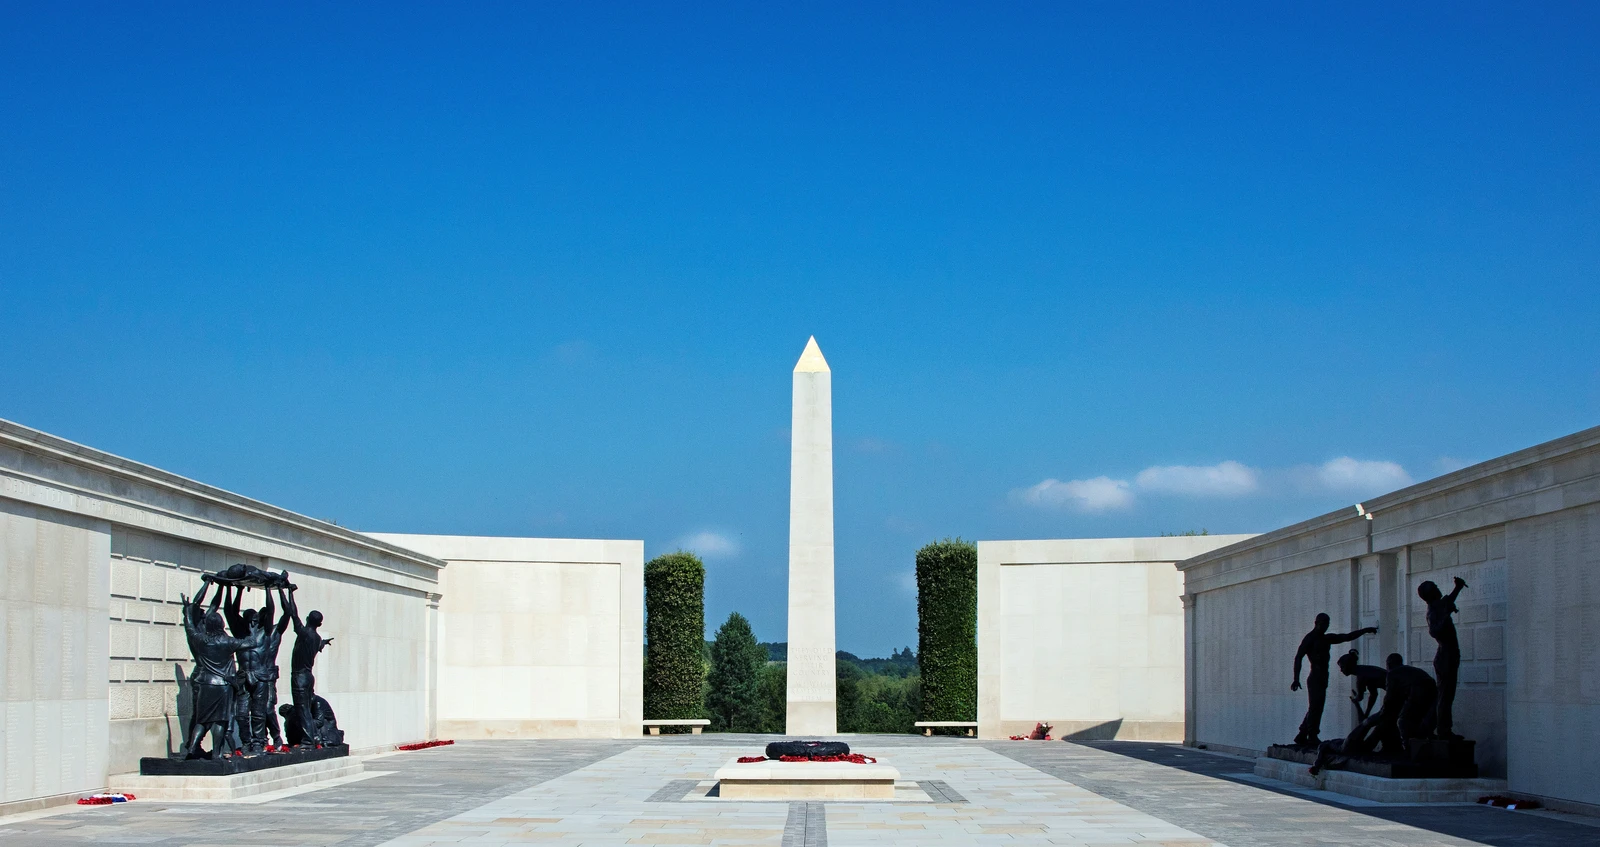 Armed Forces Memorial at the National Memorial Arboretum